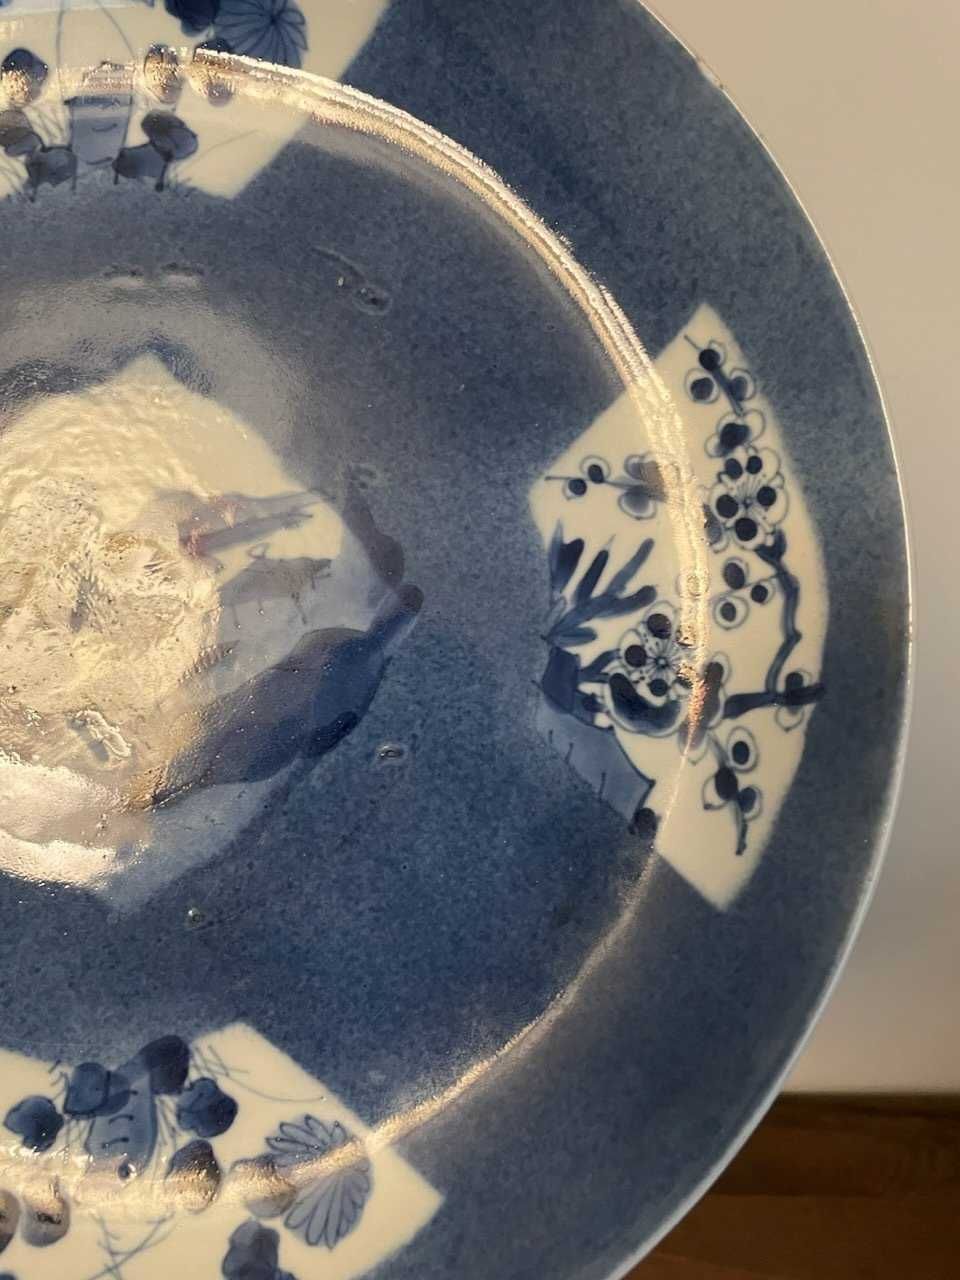 Grande e raro parto em porcelana da China Azul e branco Séc. XVIII